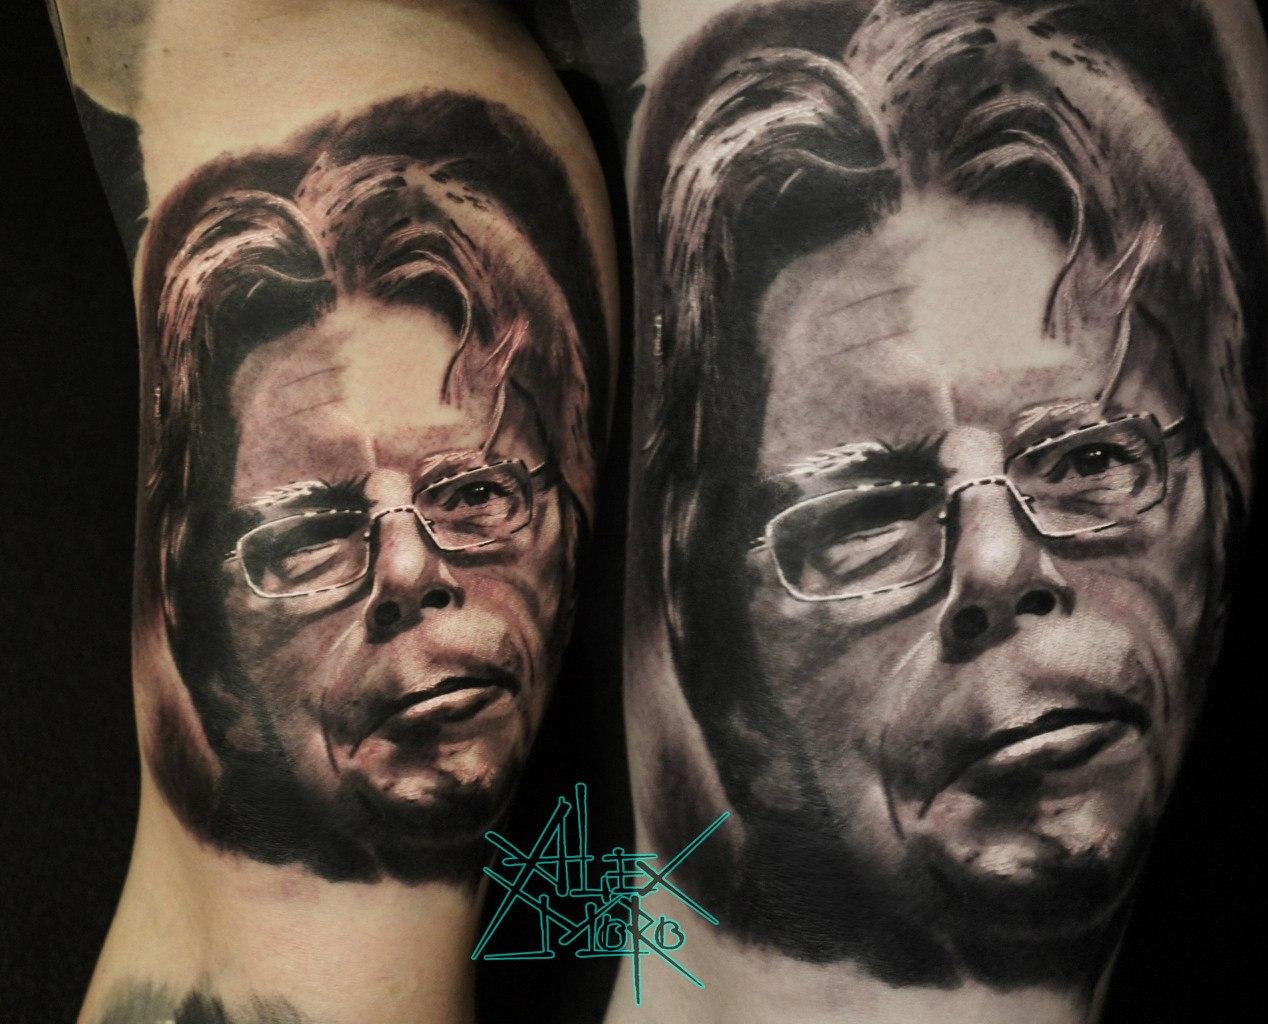 Художественная татуировка "Стивен Кинг" от Александра Морозова